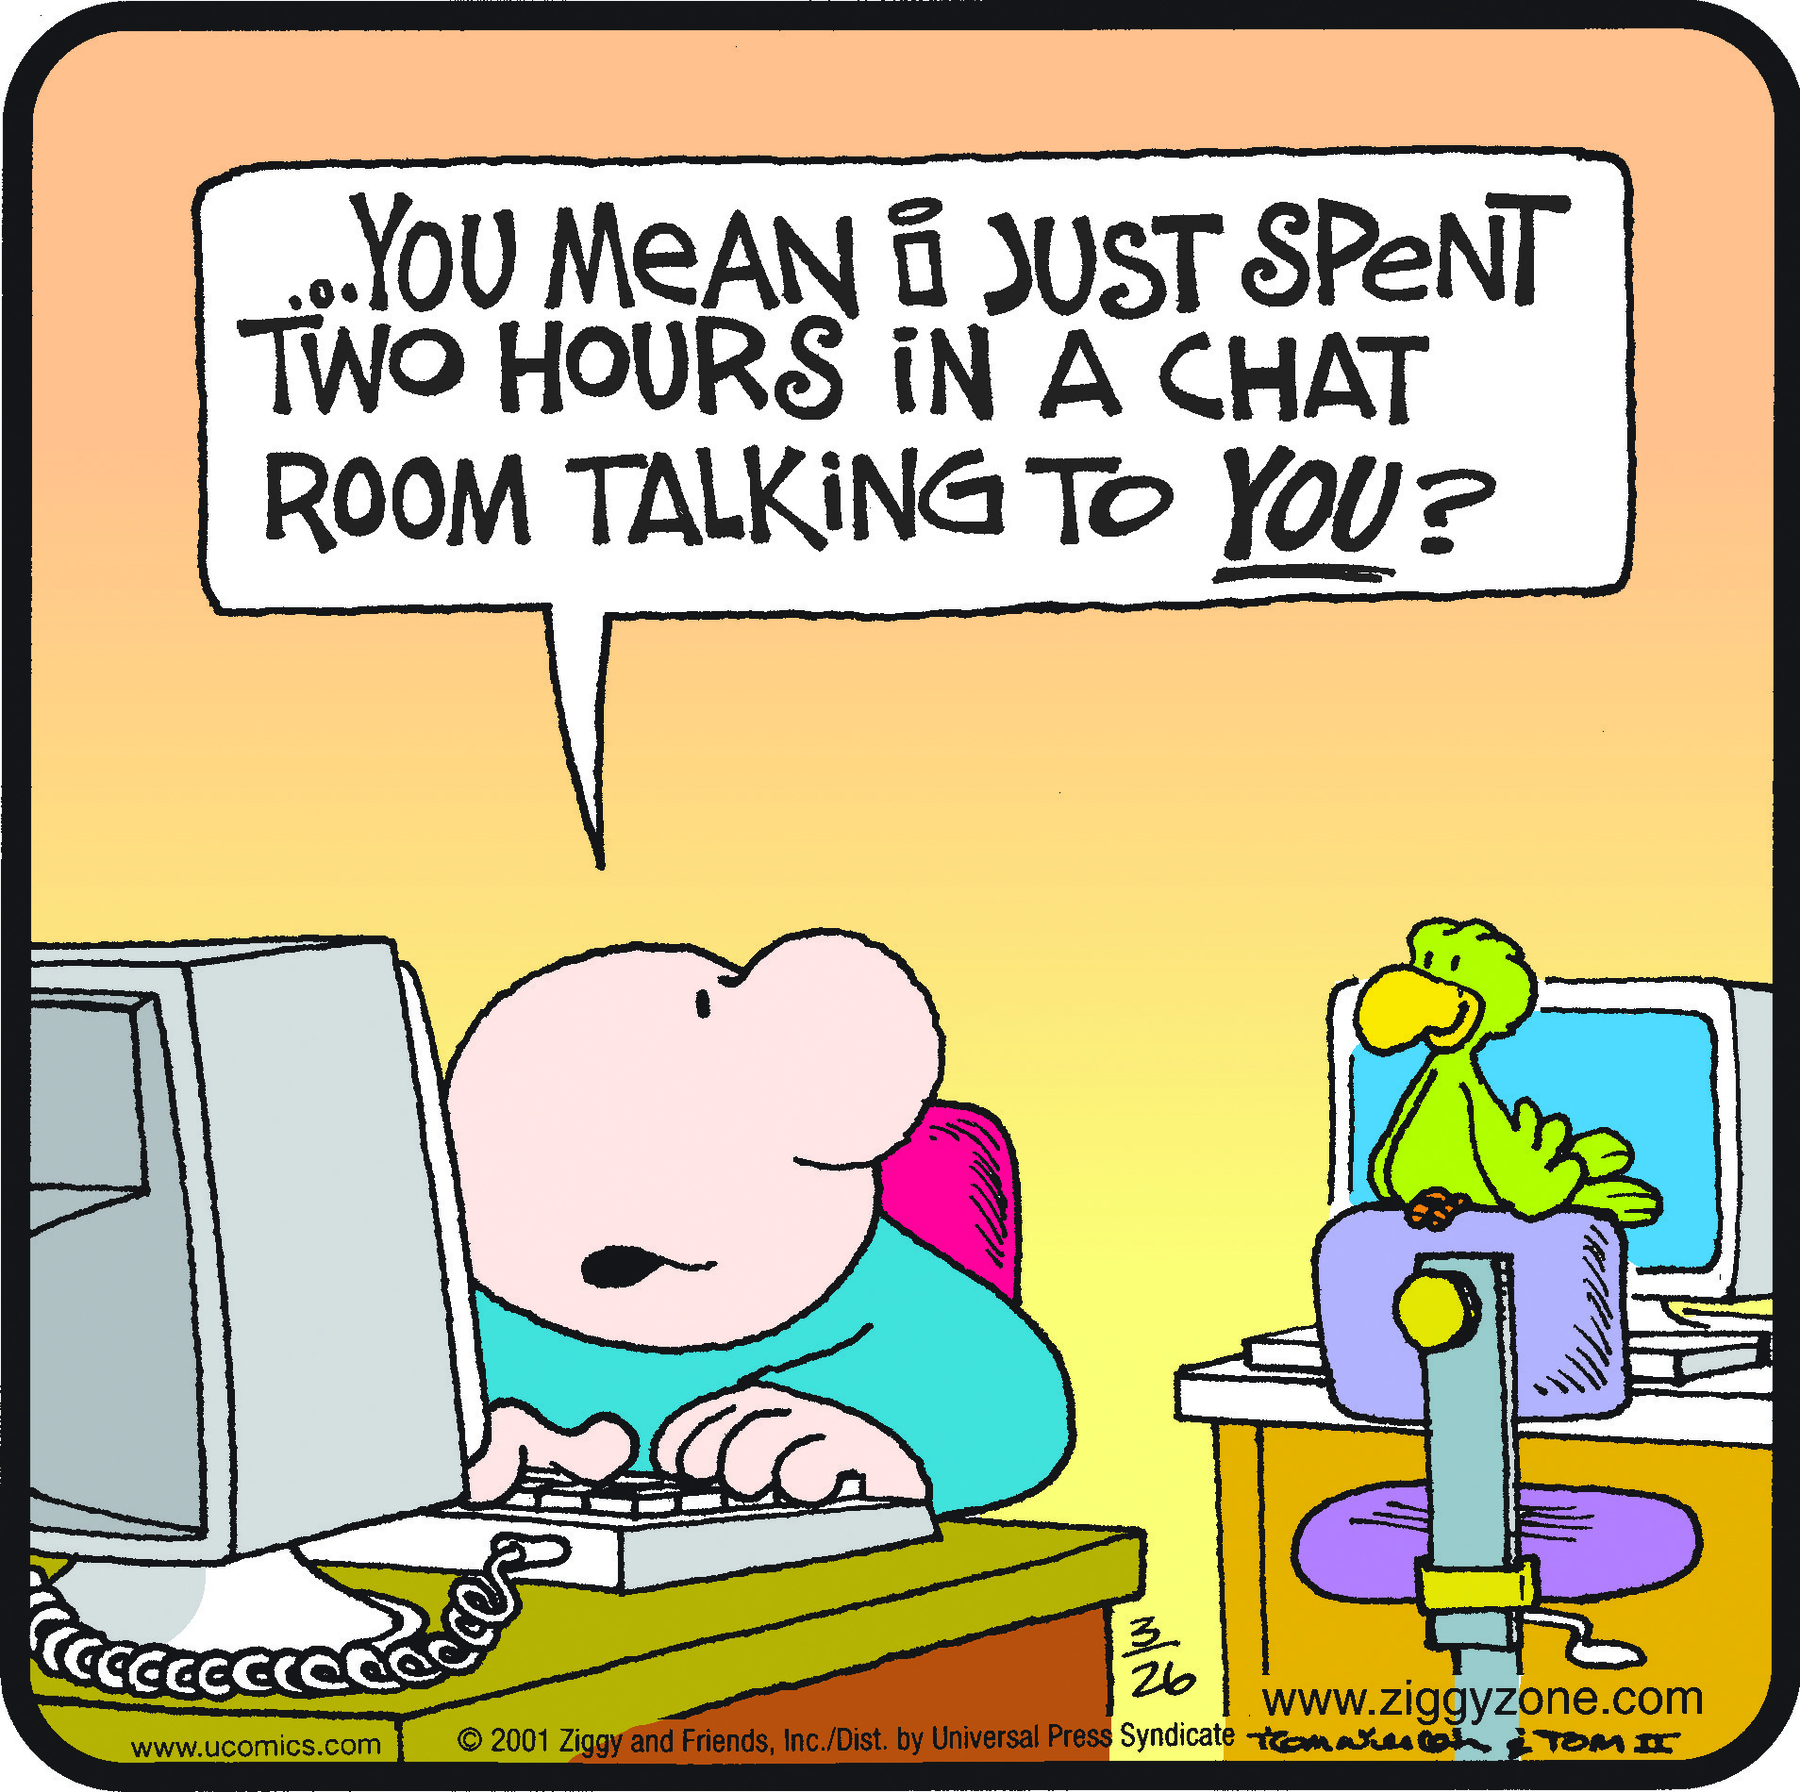 Cartum. Um homem sentado à esquerda, de frente para um mesa com um computador cinza. Ele é careca, de blusa de mangas compridas em azul, olhando para a direita em direção a um pássaro verde de bico amarelo ao fundo. Este está sobre uma cadeira azul, de frente para mesa e computador em cinza e azul. O homem pergunta para o pássaro: YOU MEAN I JUST SPENT TWO HOURS IN A CHAT ROOM TALKING TO YOU?, com a palavra YOU sublinhada.